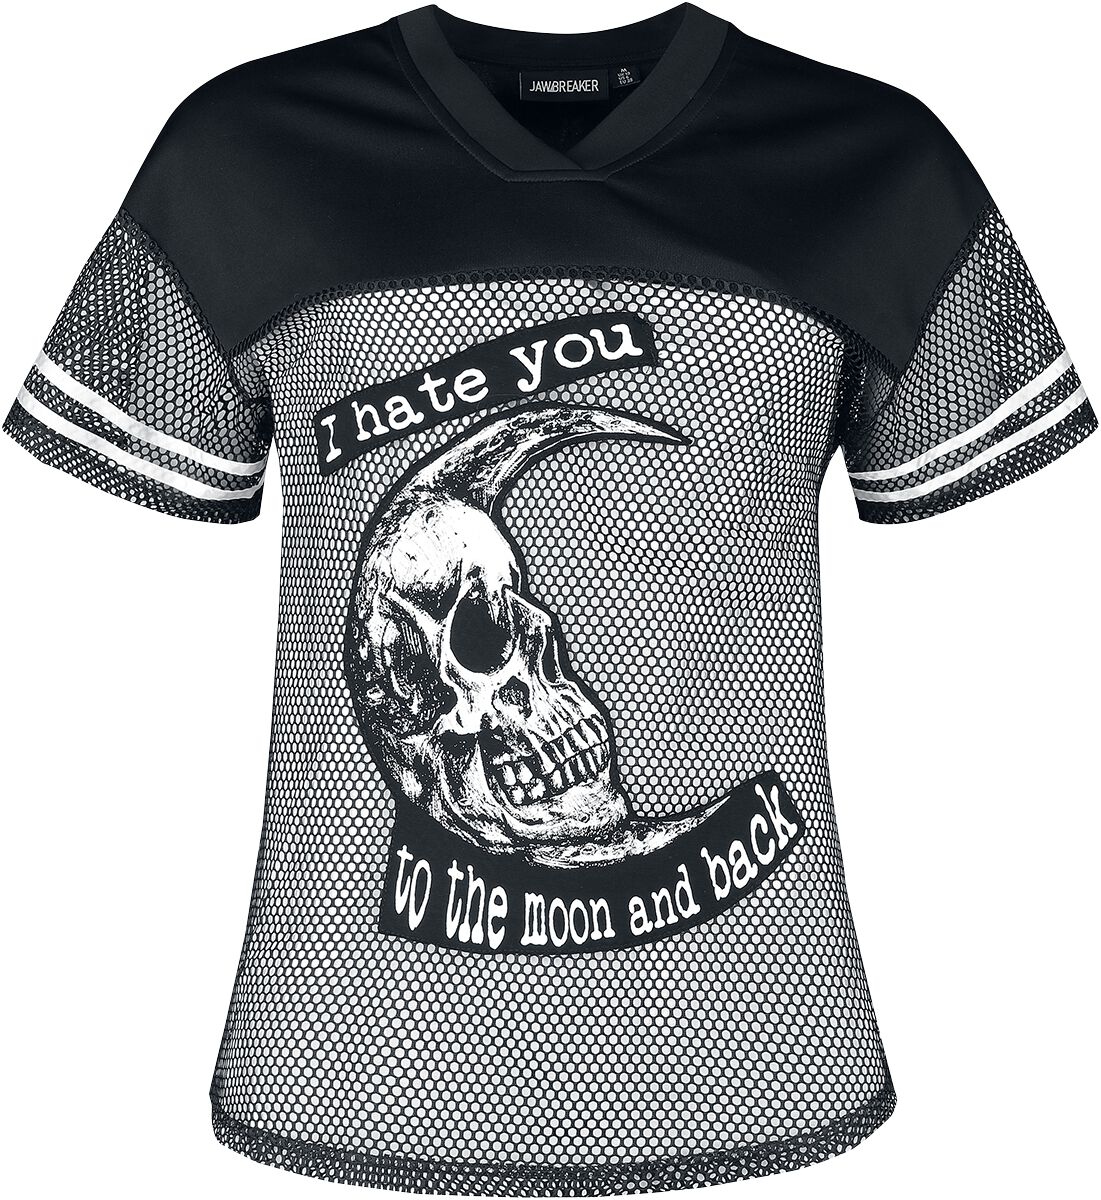 Jawbreaker - Gothic T-Shirt - To The Moon And Back Tee - XS bis XXL - für Damen - Größe XXL - schwarz/weiß